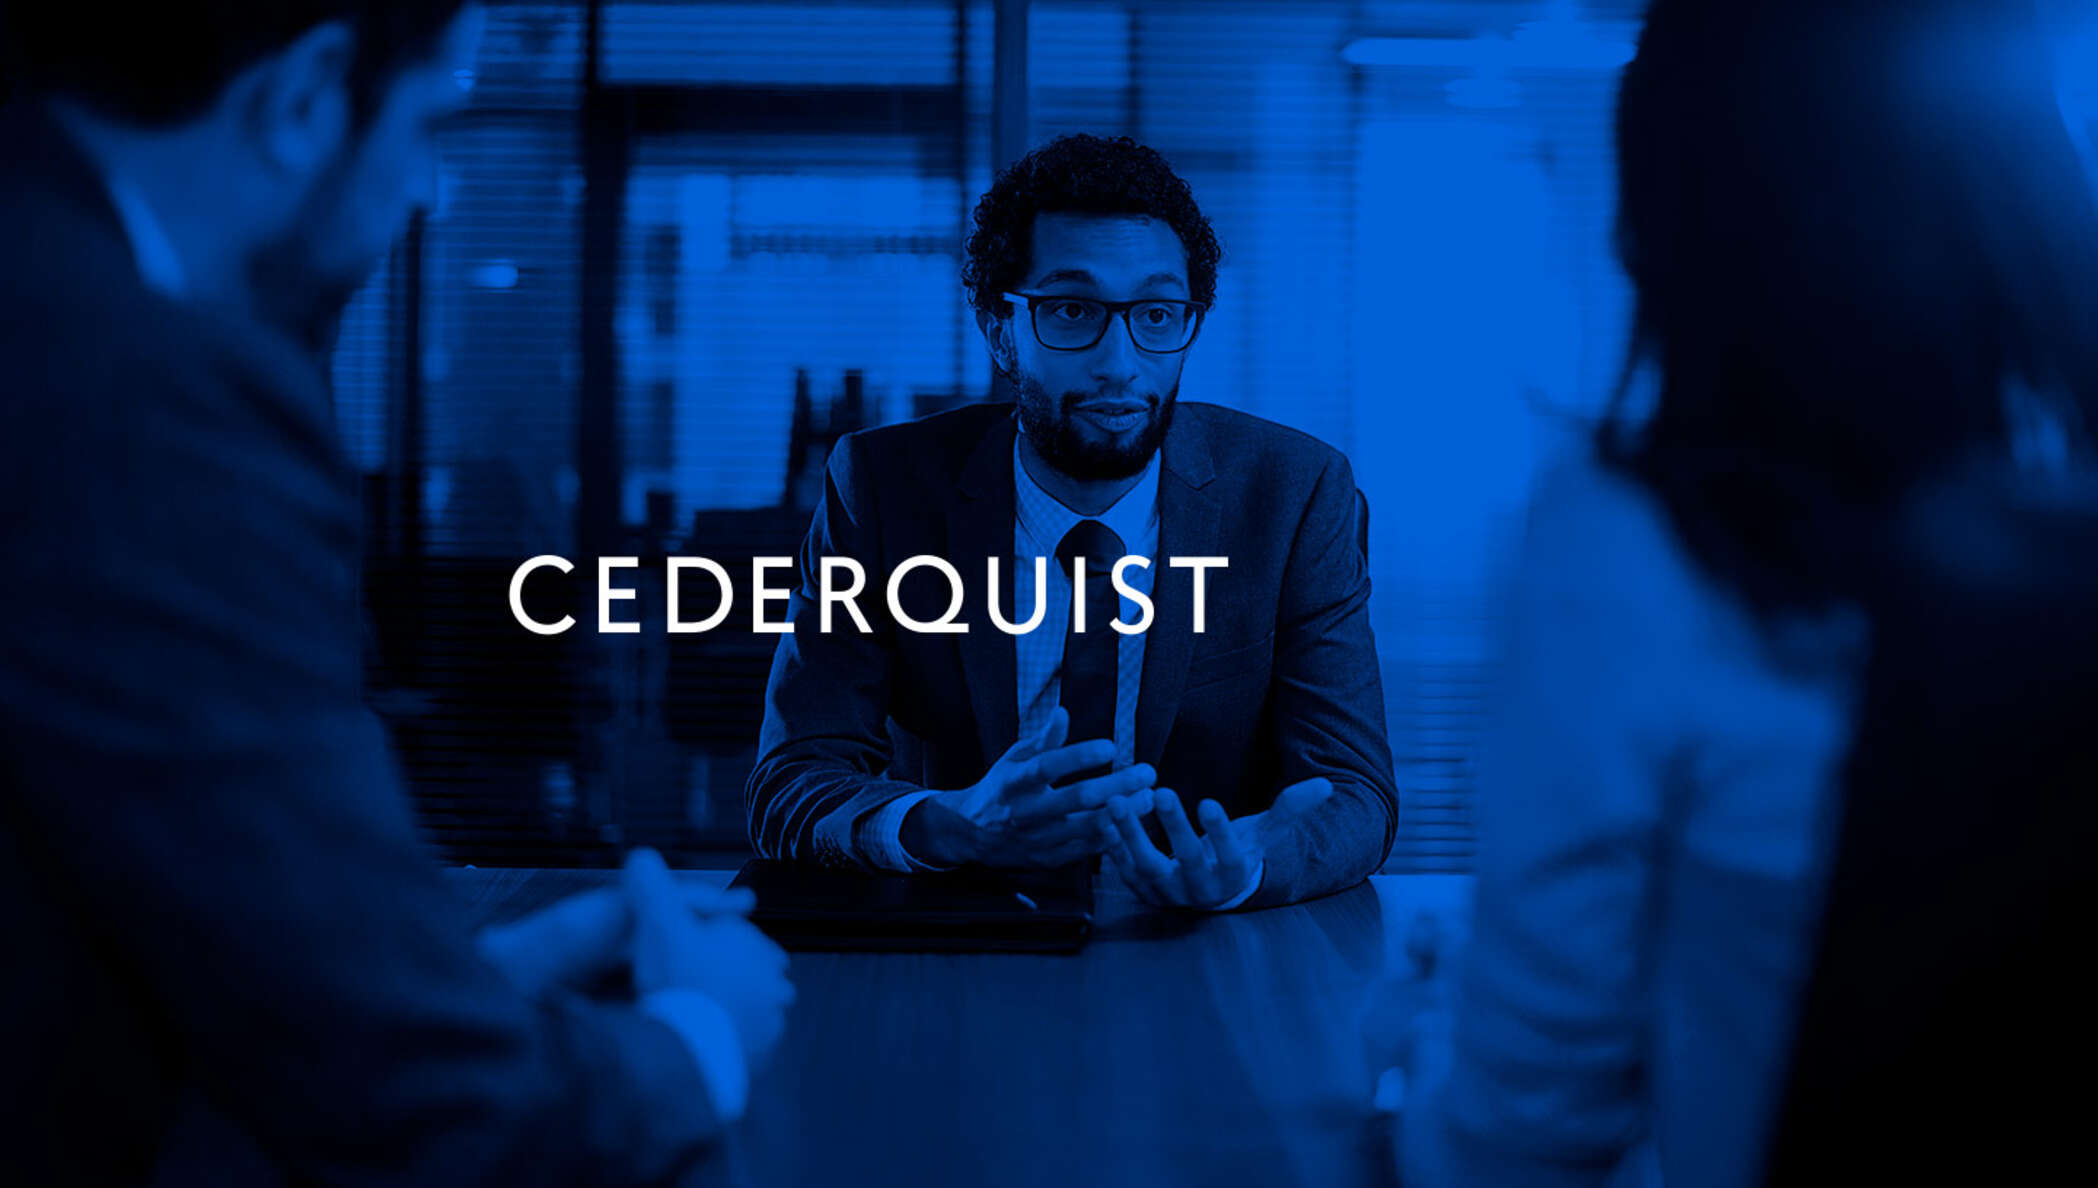 Zweeds advocatenkantoor Cederquist vertrouwt op DocuSign technologie voor ID-verificatie